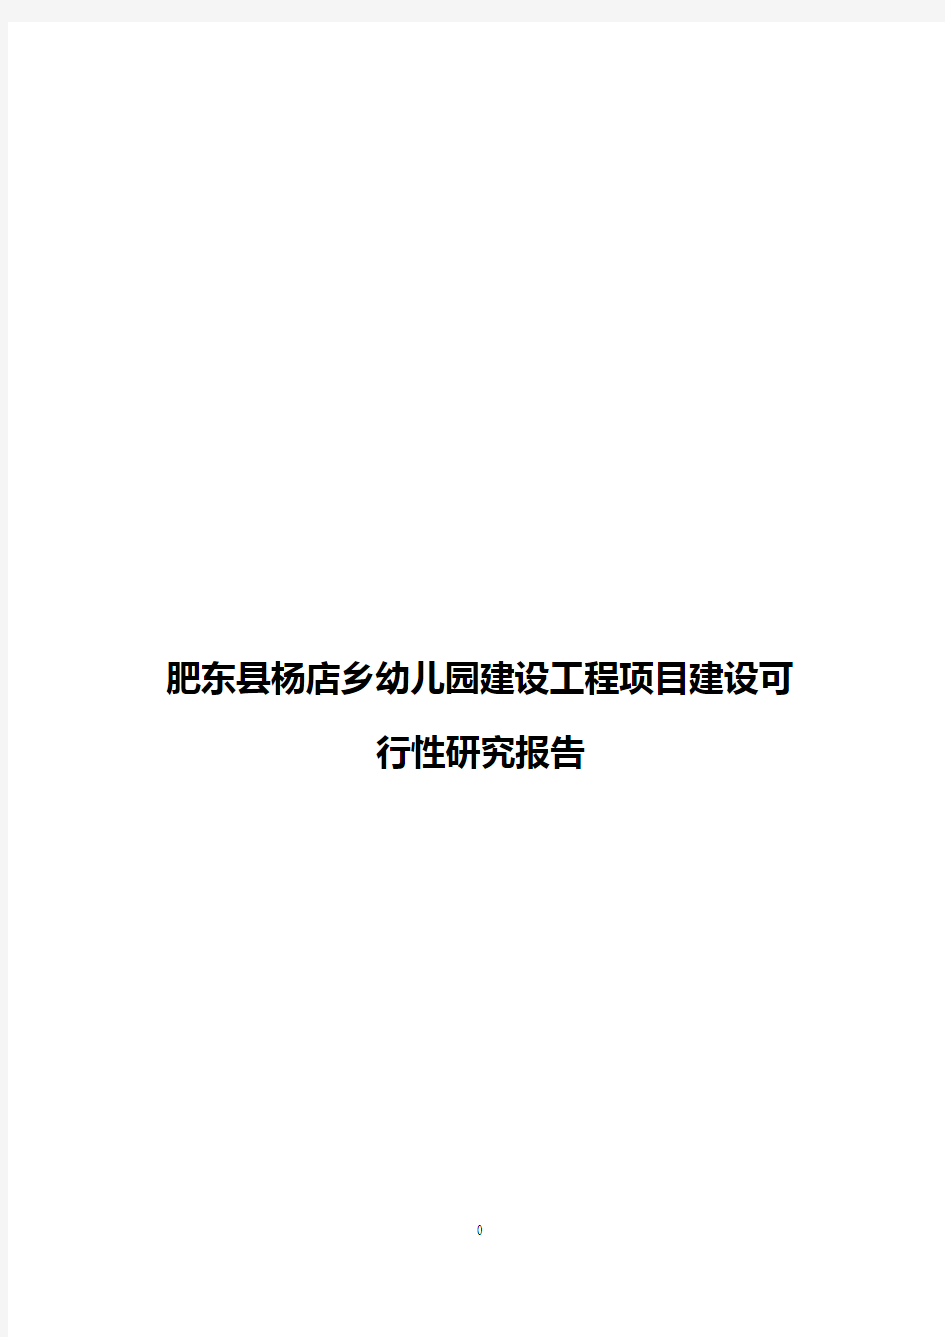 【整编】肥东县杨店乡幼儿园建设工程项目建设可行性研究报告